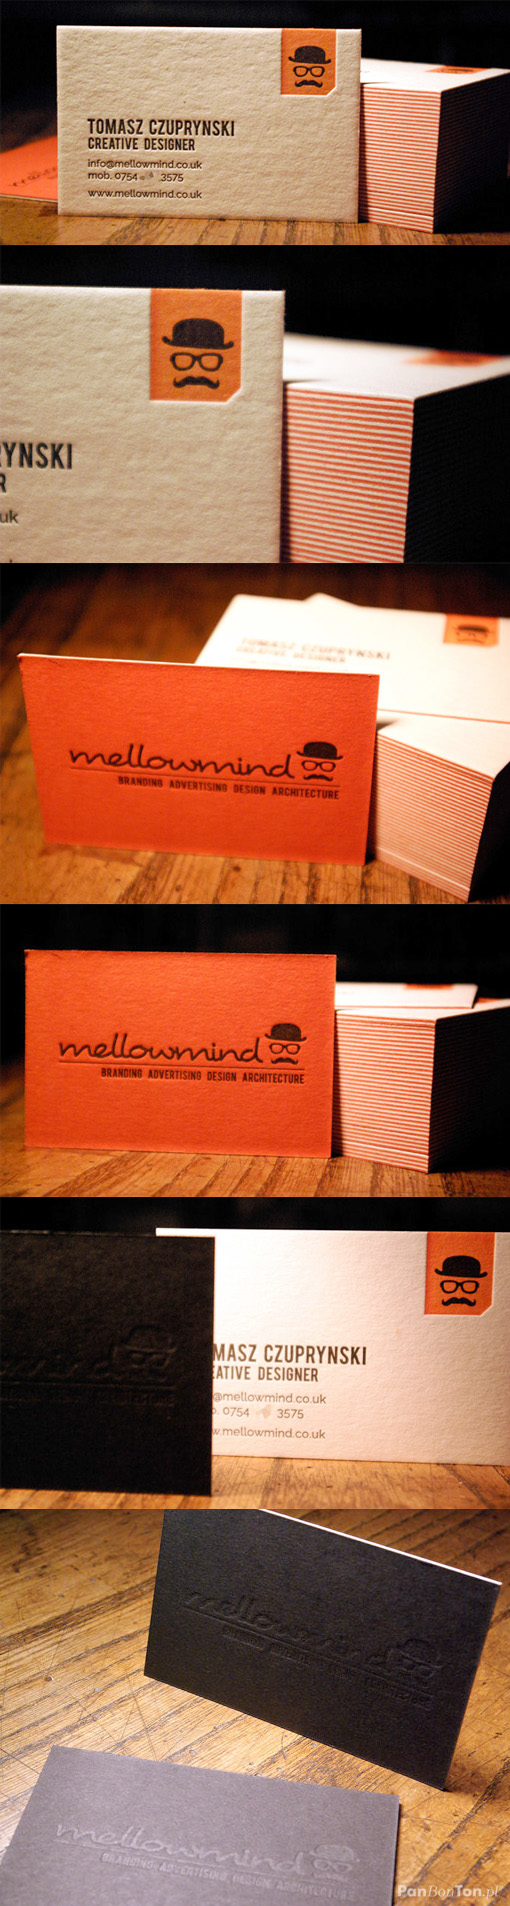 Striking Orange And Black Letterpress Business Card Design